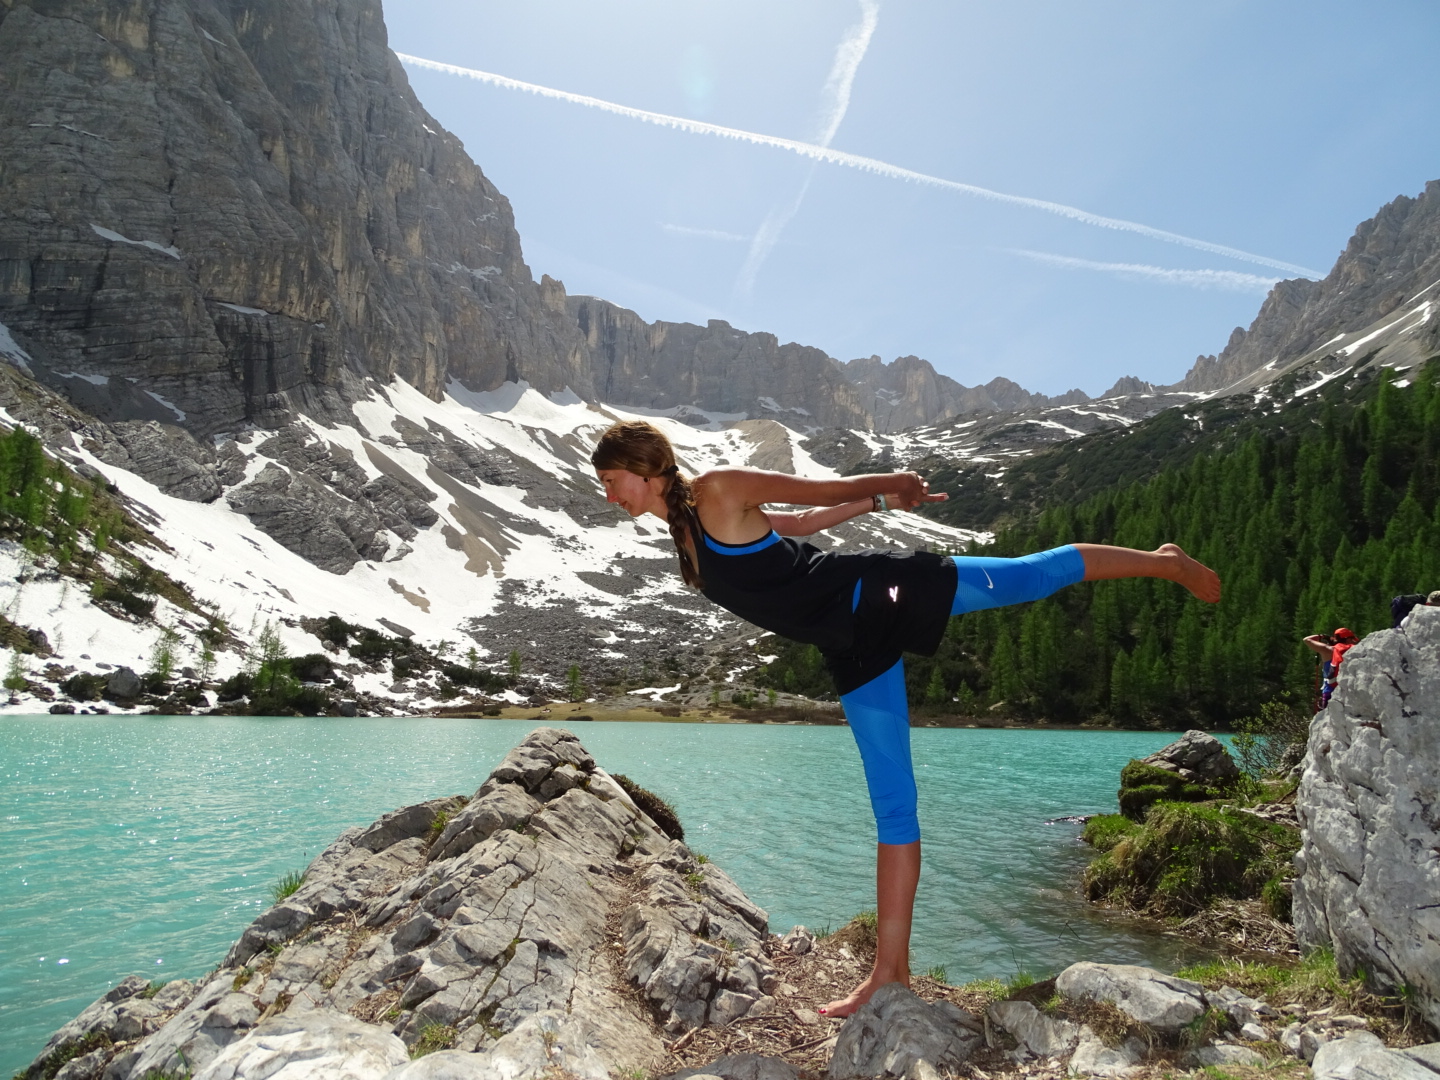 Der Krieger 3 ist eine Balancehaltung im Yoga. Bei Yoga & Wandern kann man mit ihm sein Gleichgewicht in der Natur finden.